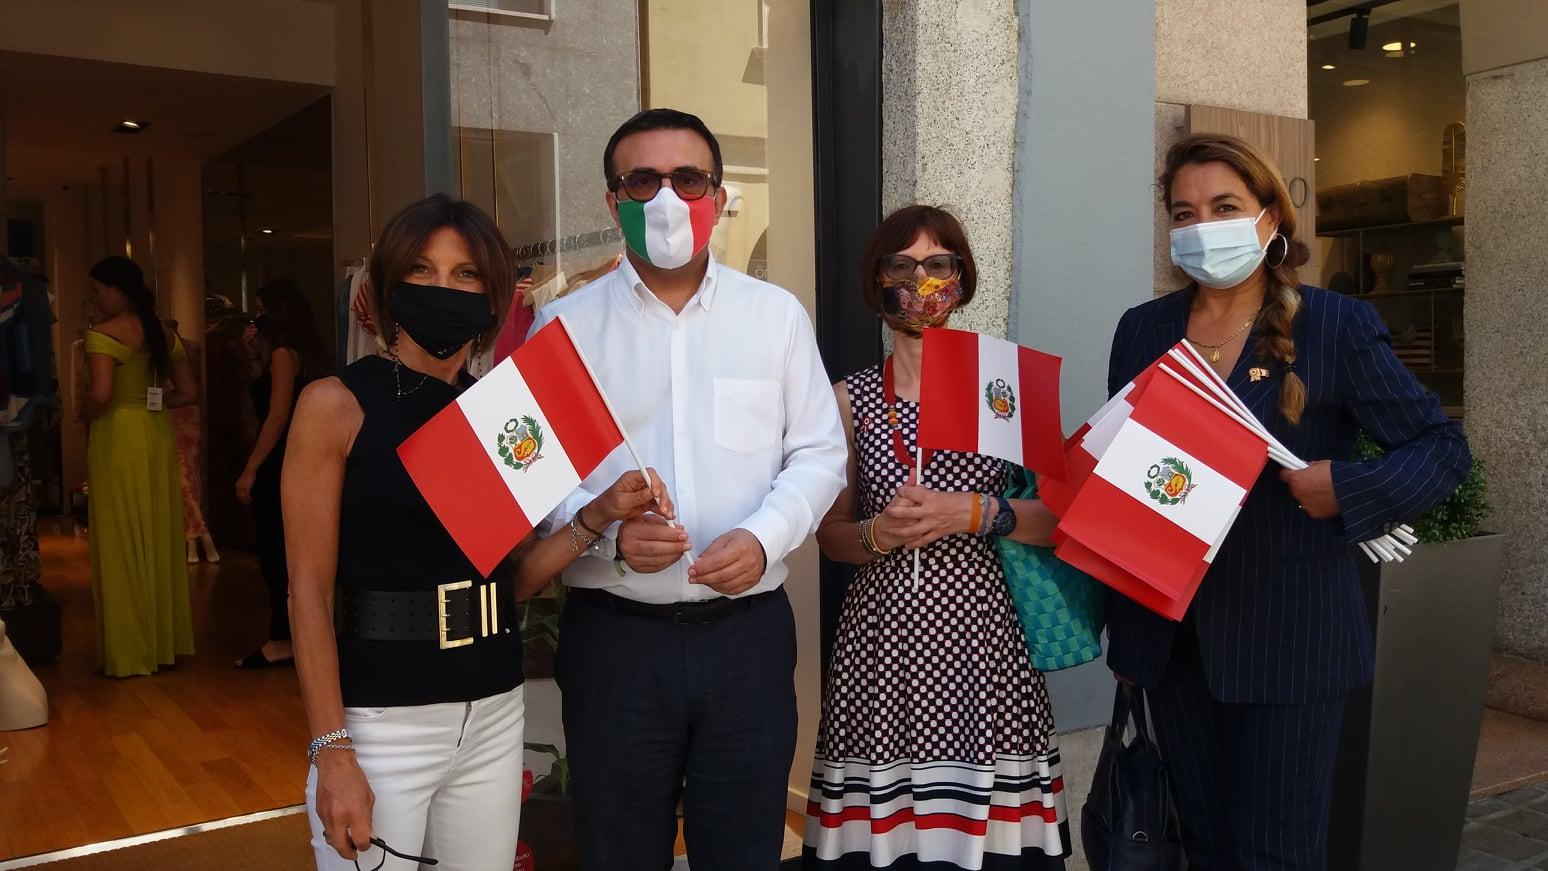 La comunità peruviana di Monza e Brianza festeggia i 200 anni di indipendenza del Perù